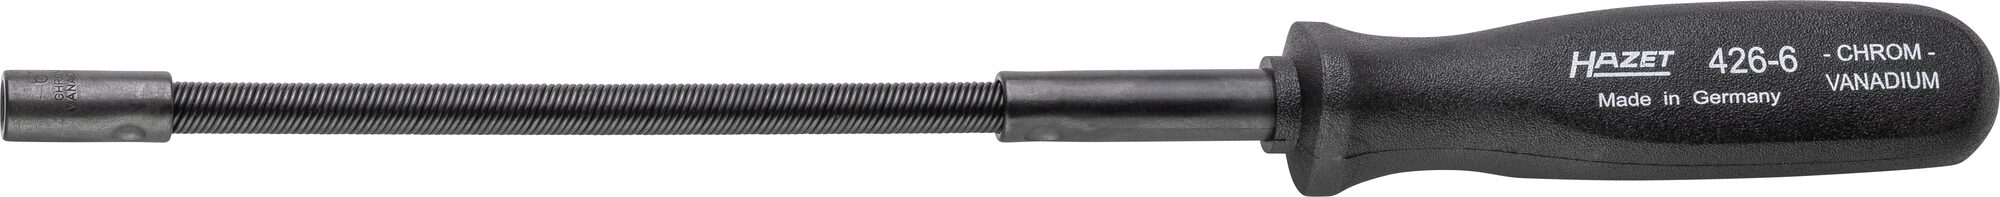 HAZET Steckschlüssel · flexibel 426-6 · Außen Sechskant Profil · 6 mm